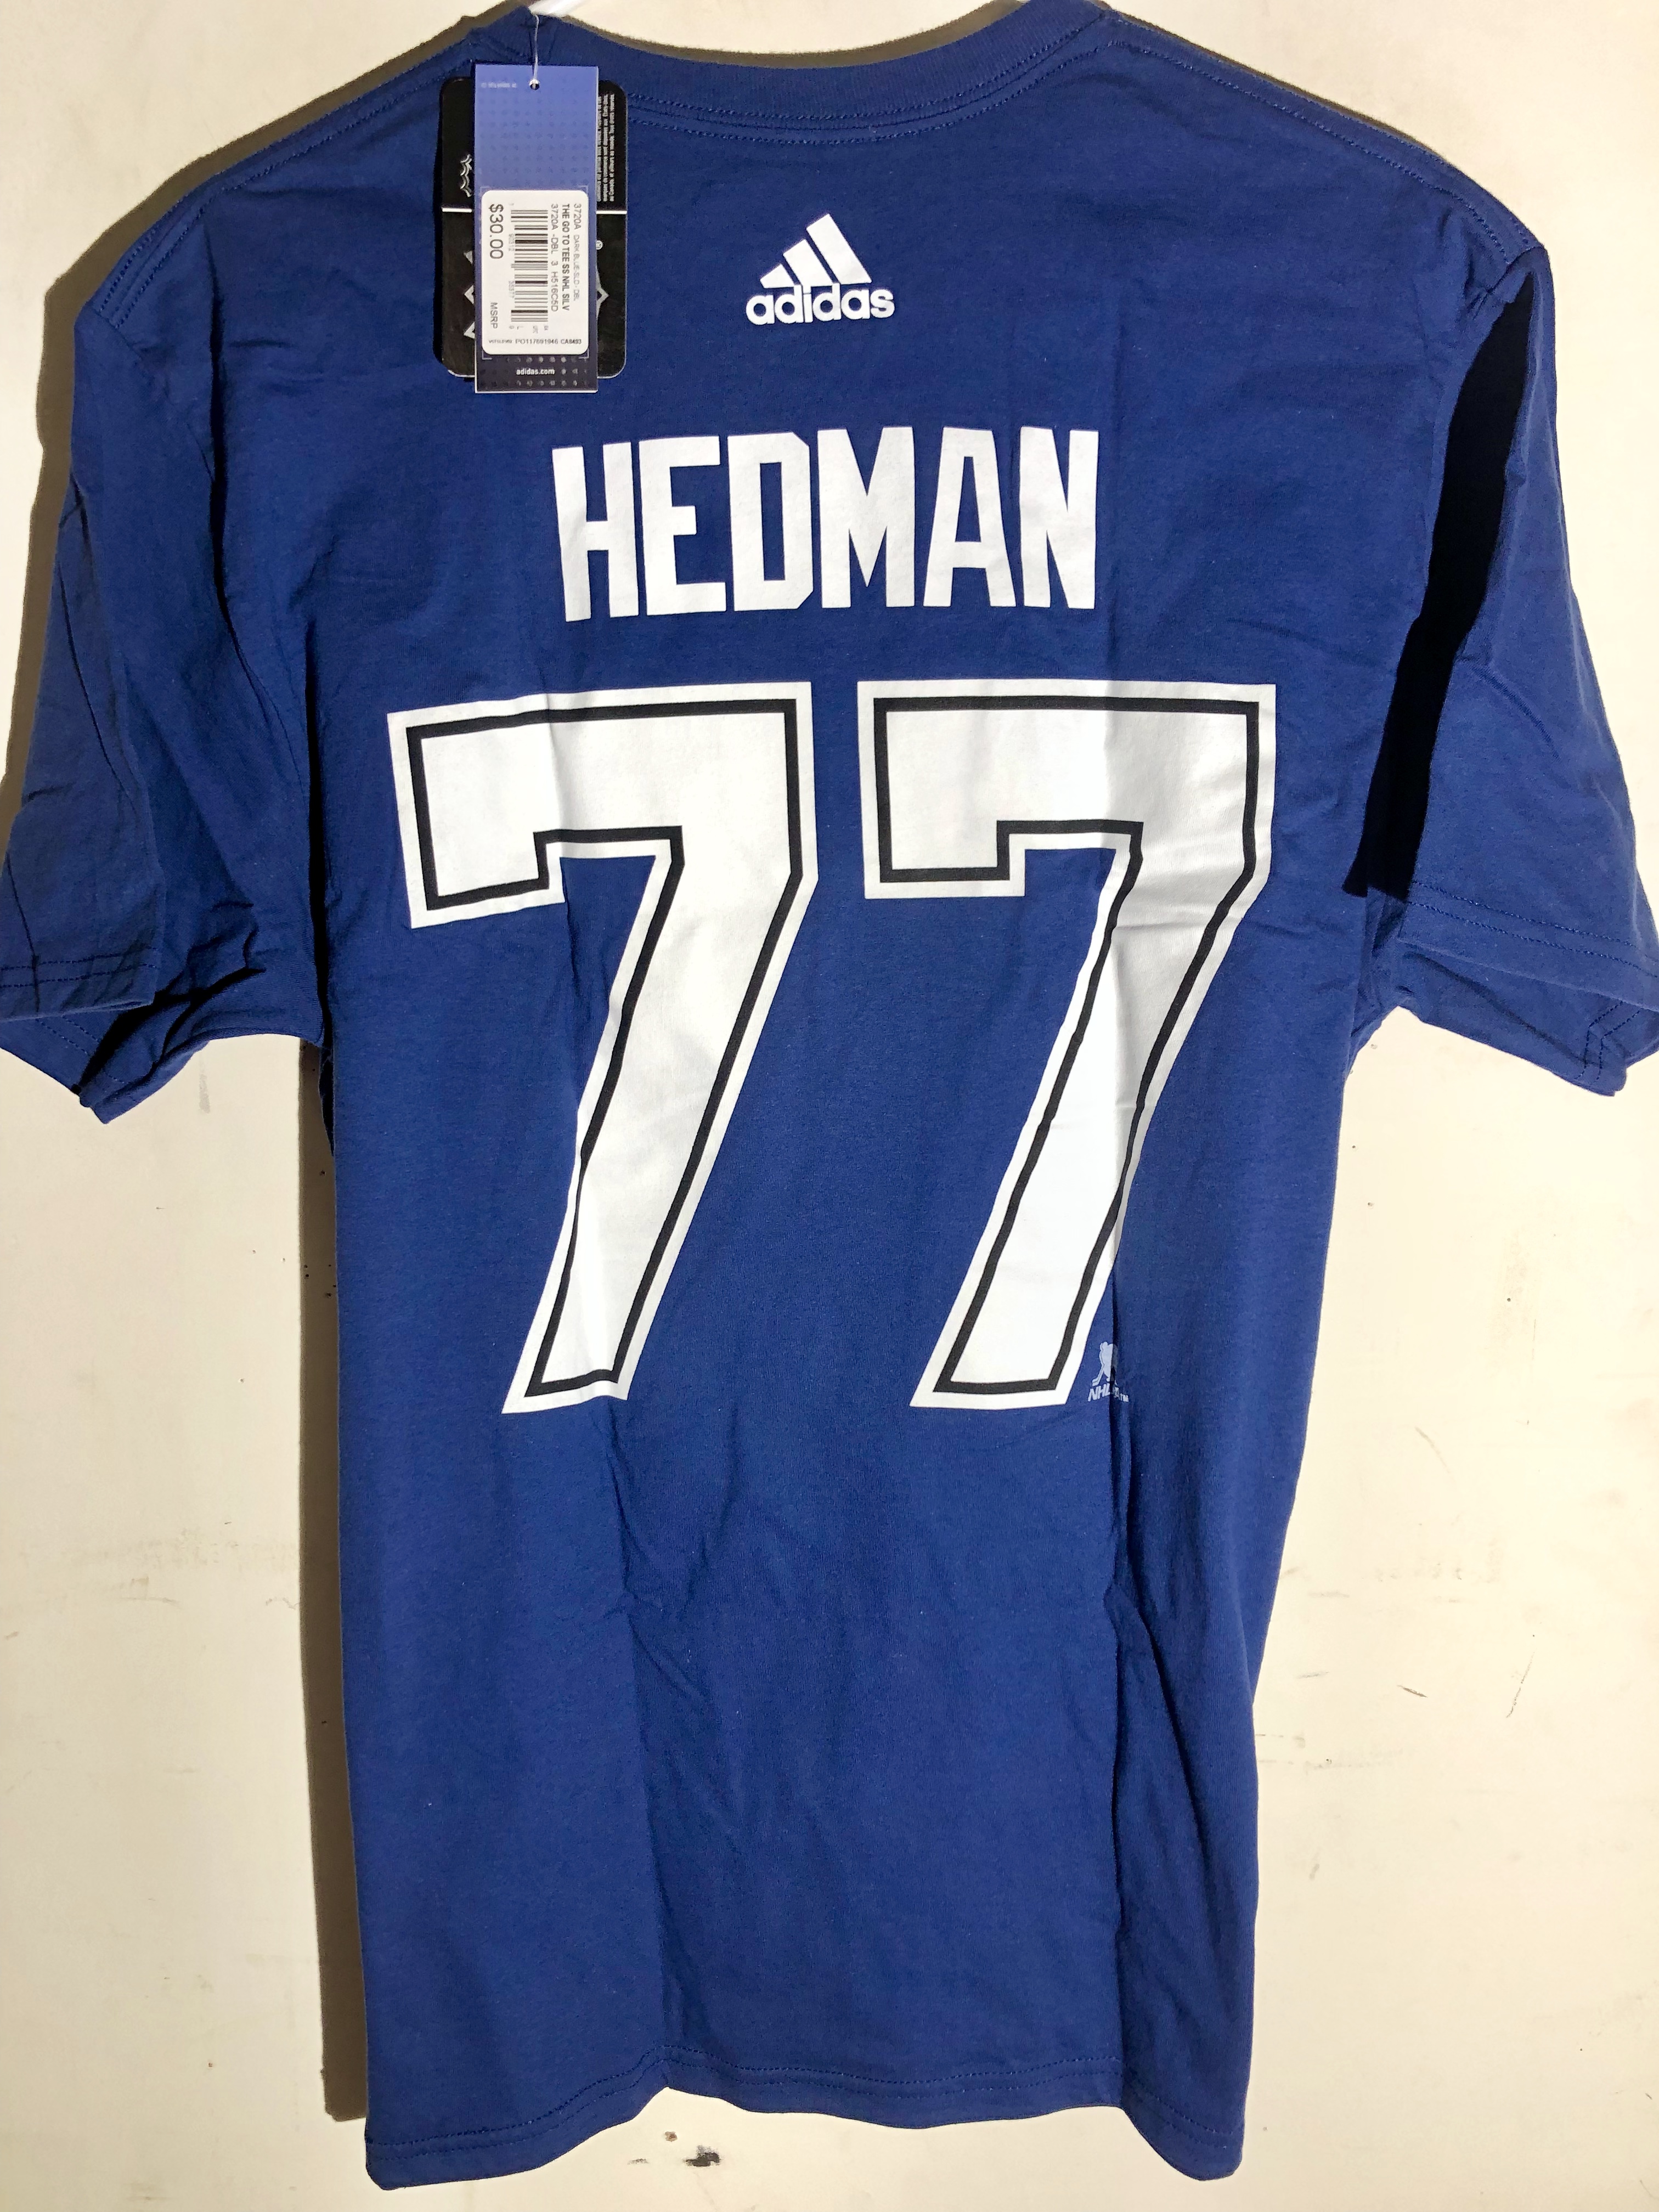 hedman shirt